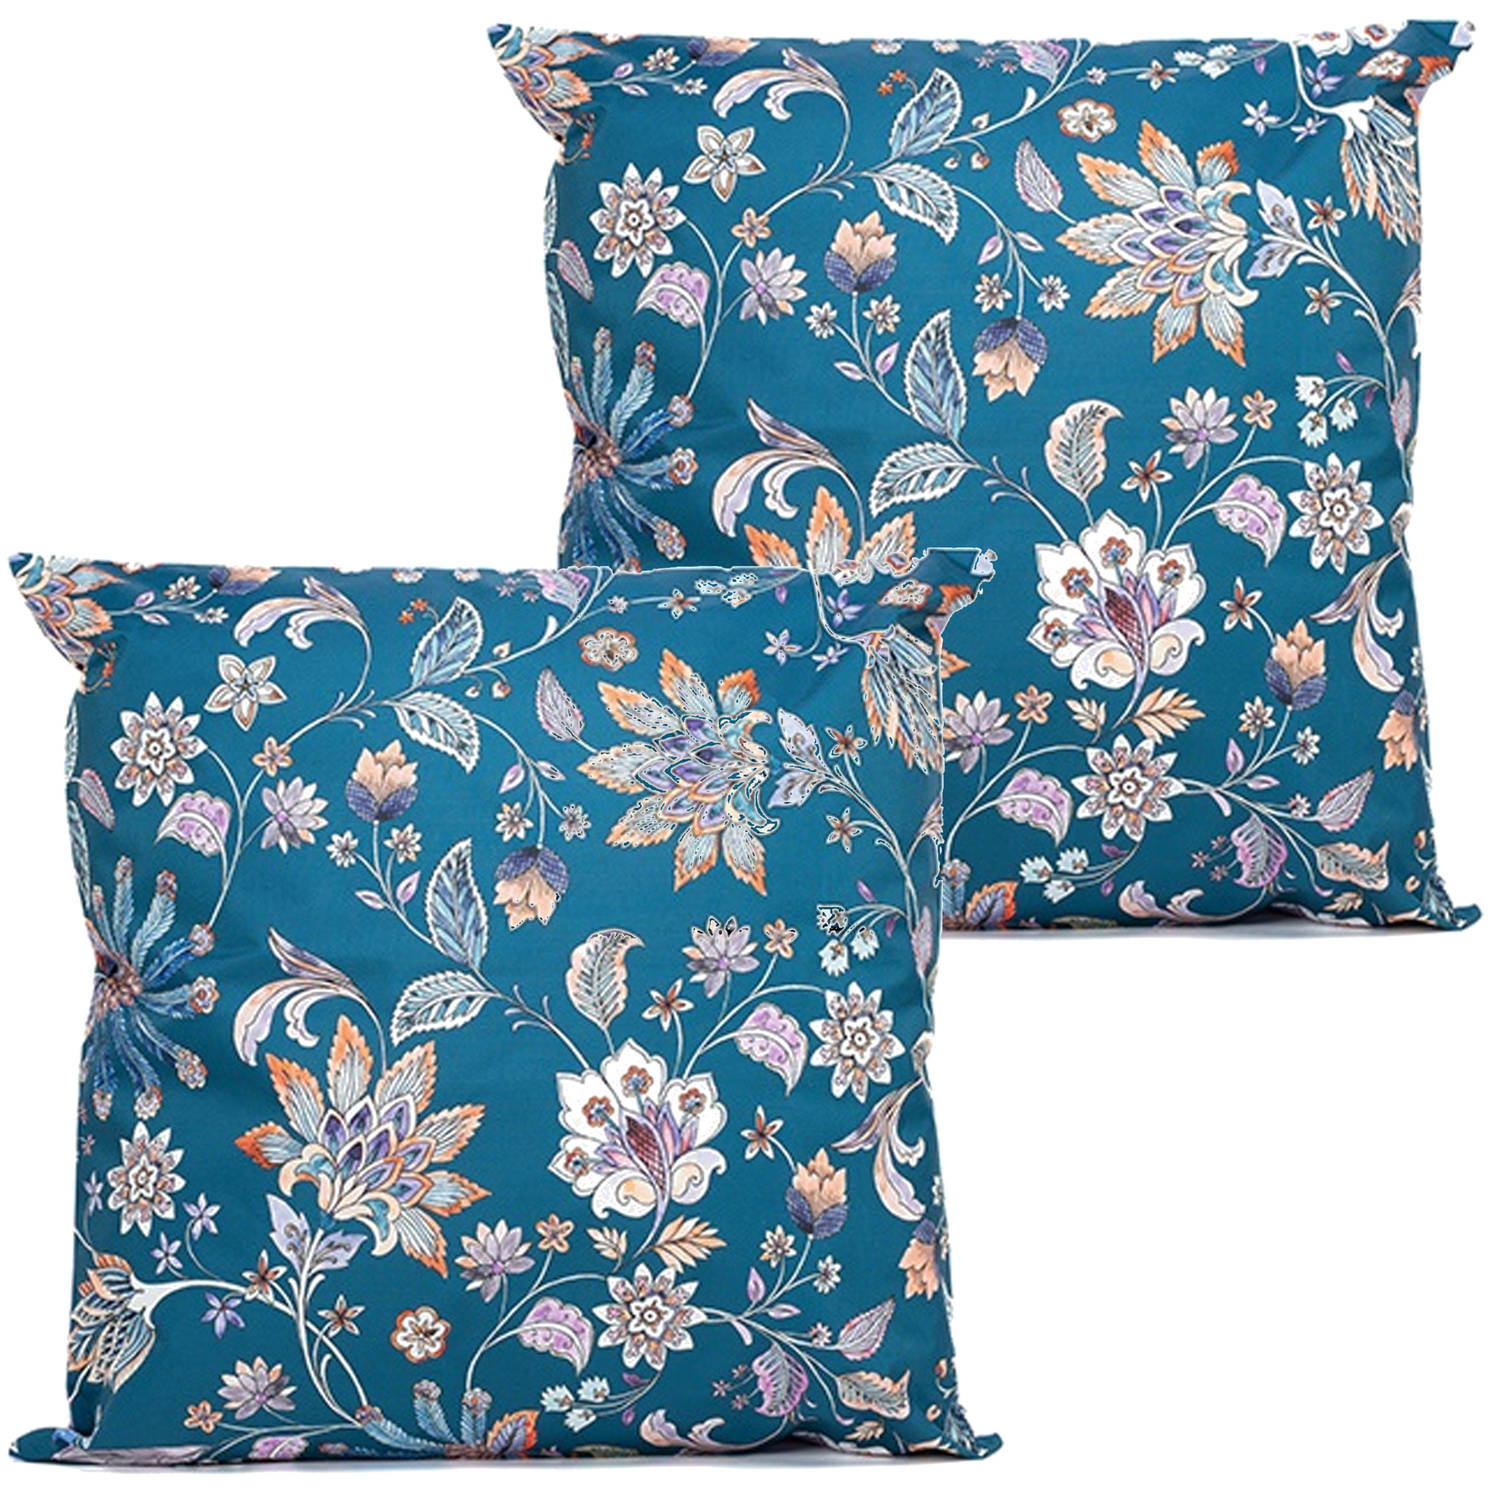 Anna's collection buitenkussen bloem 2x blauw-paars 60 x 60 cm tuinstoelkussens